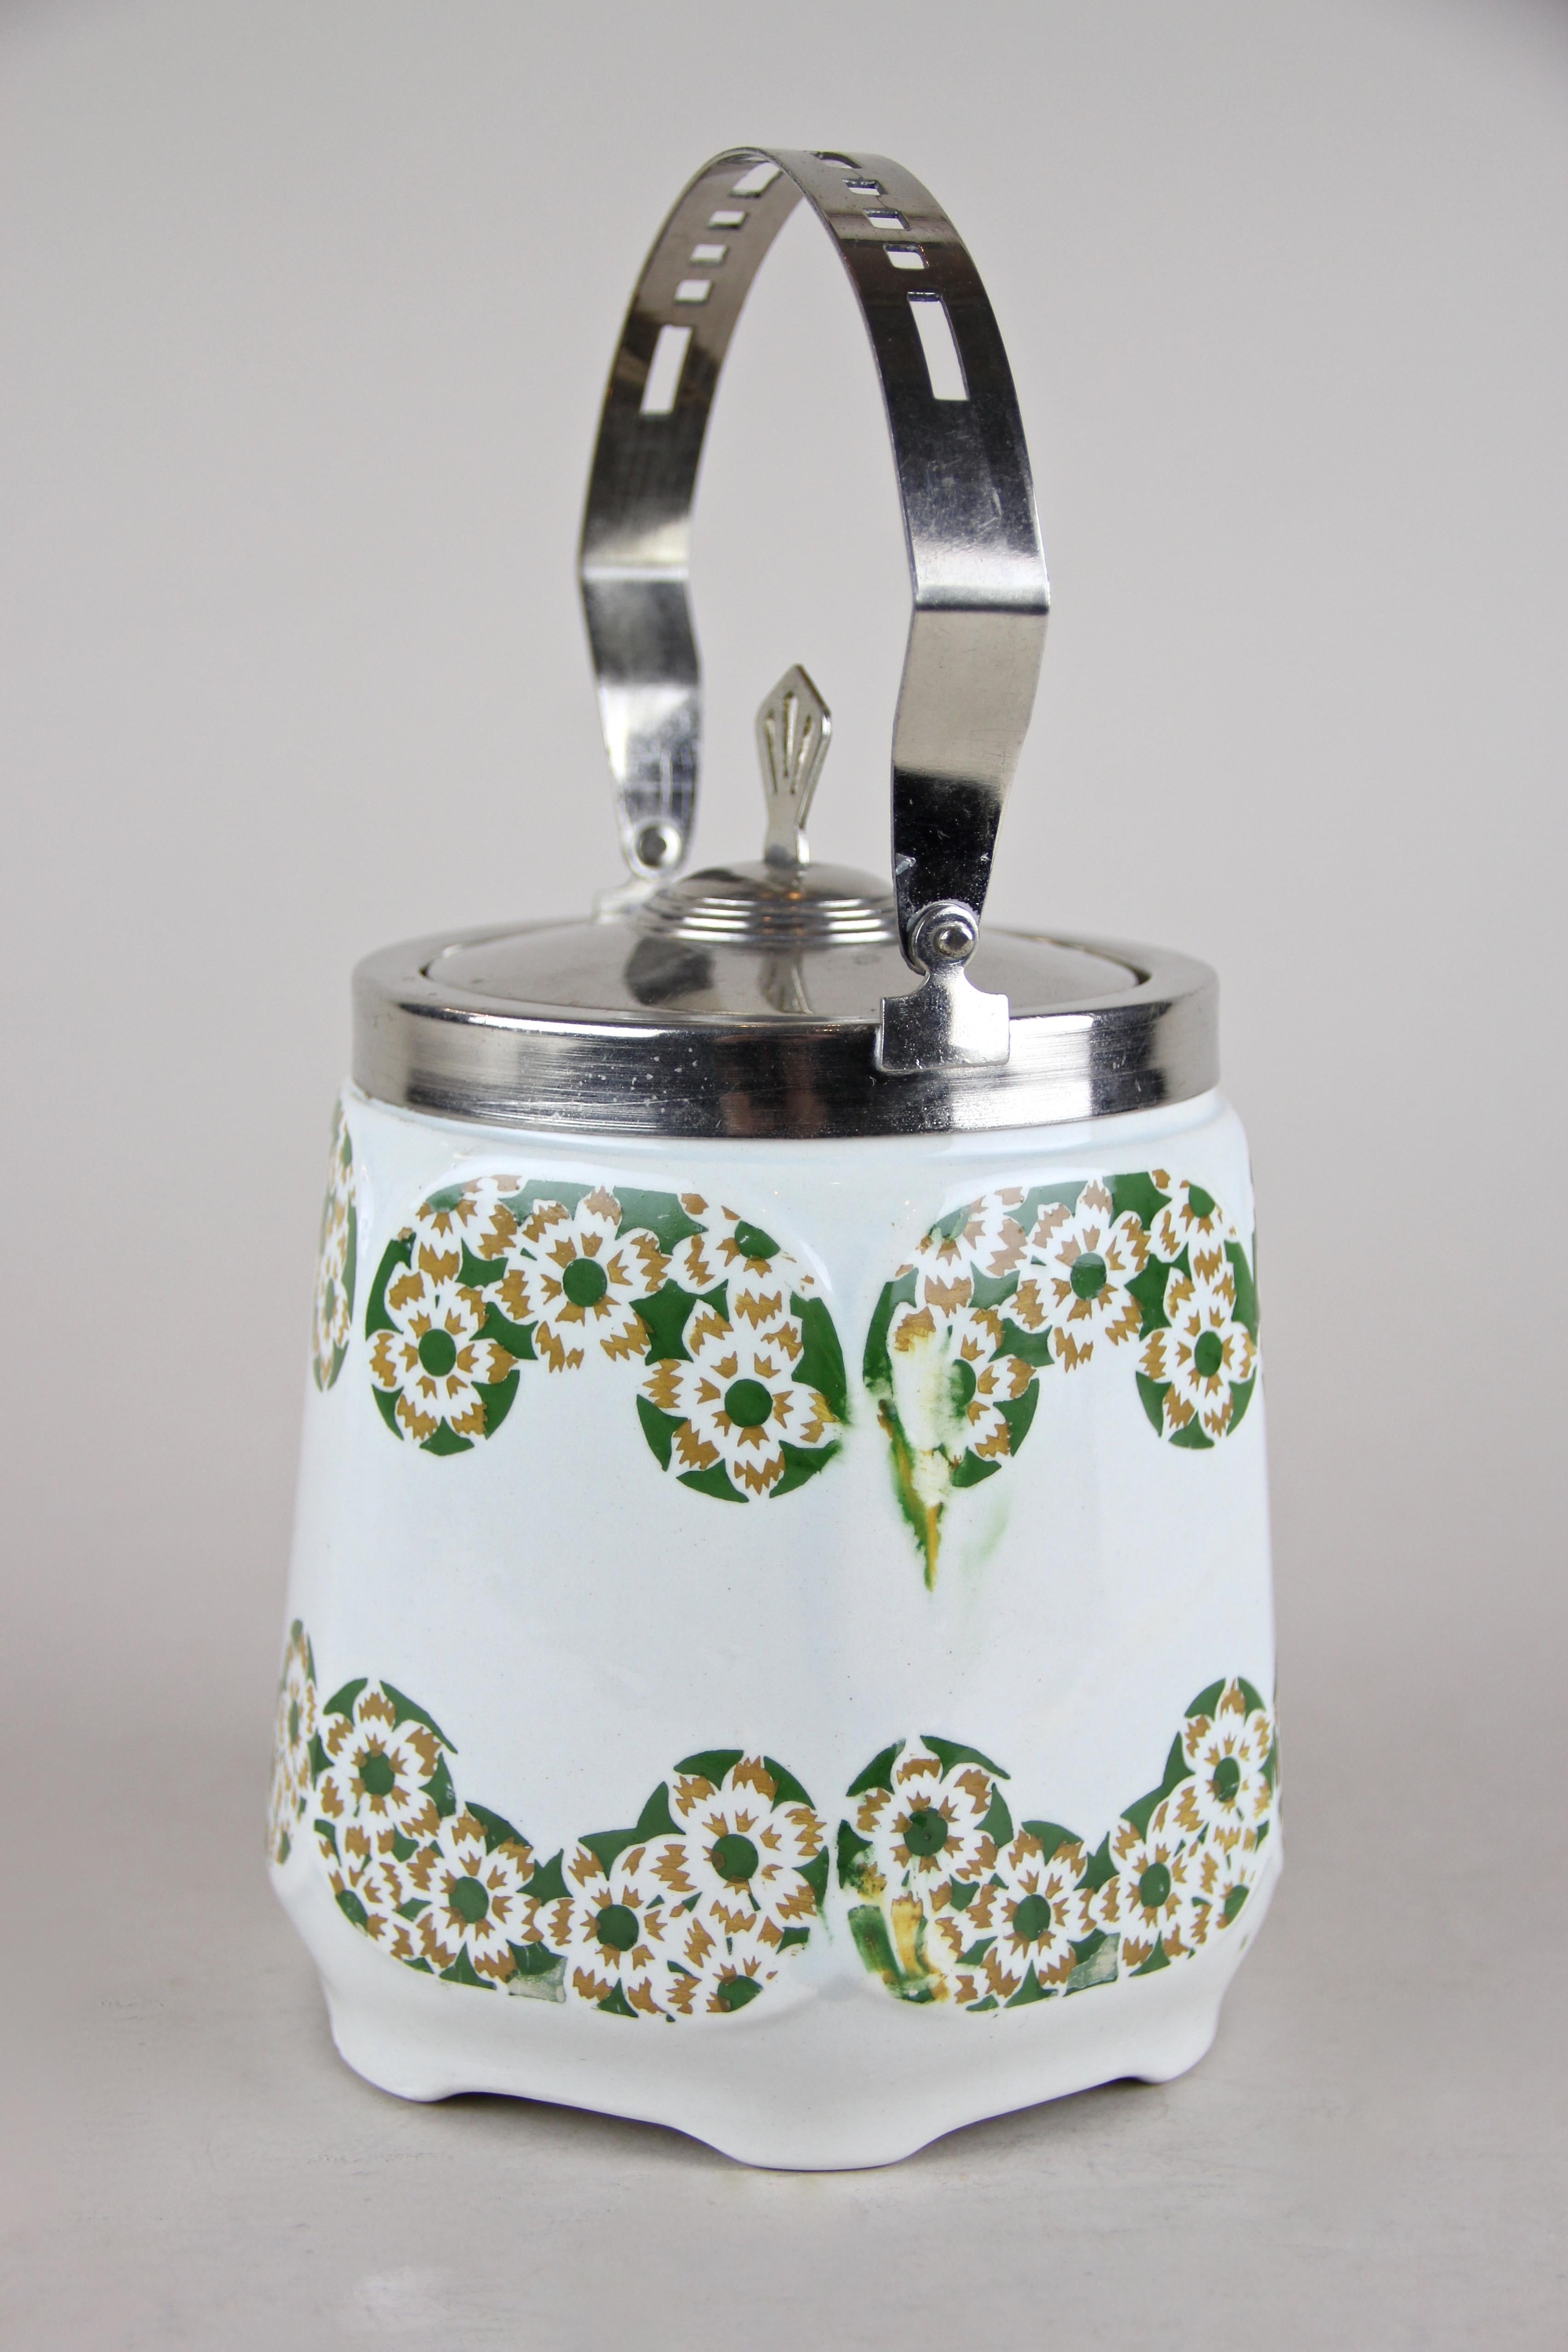 20th Century Art Nouveau Lidded Ceramic Jar, Austria, circa 1915